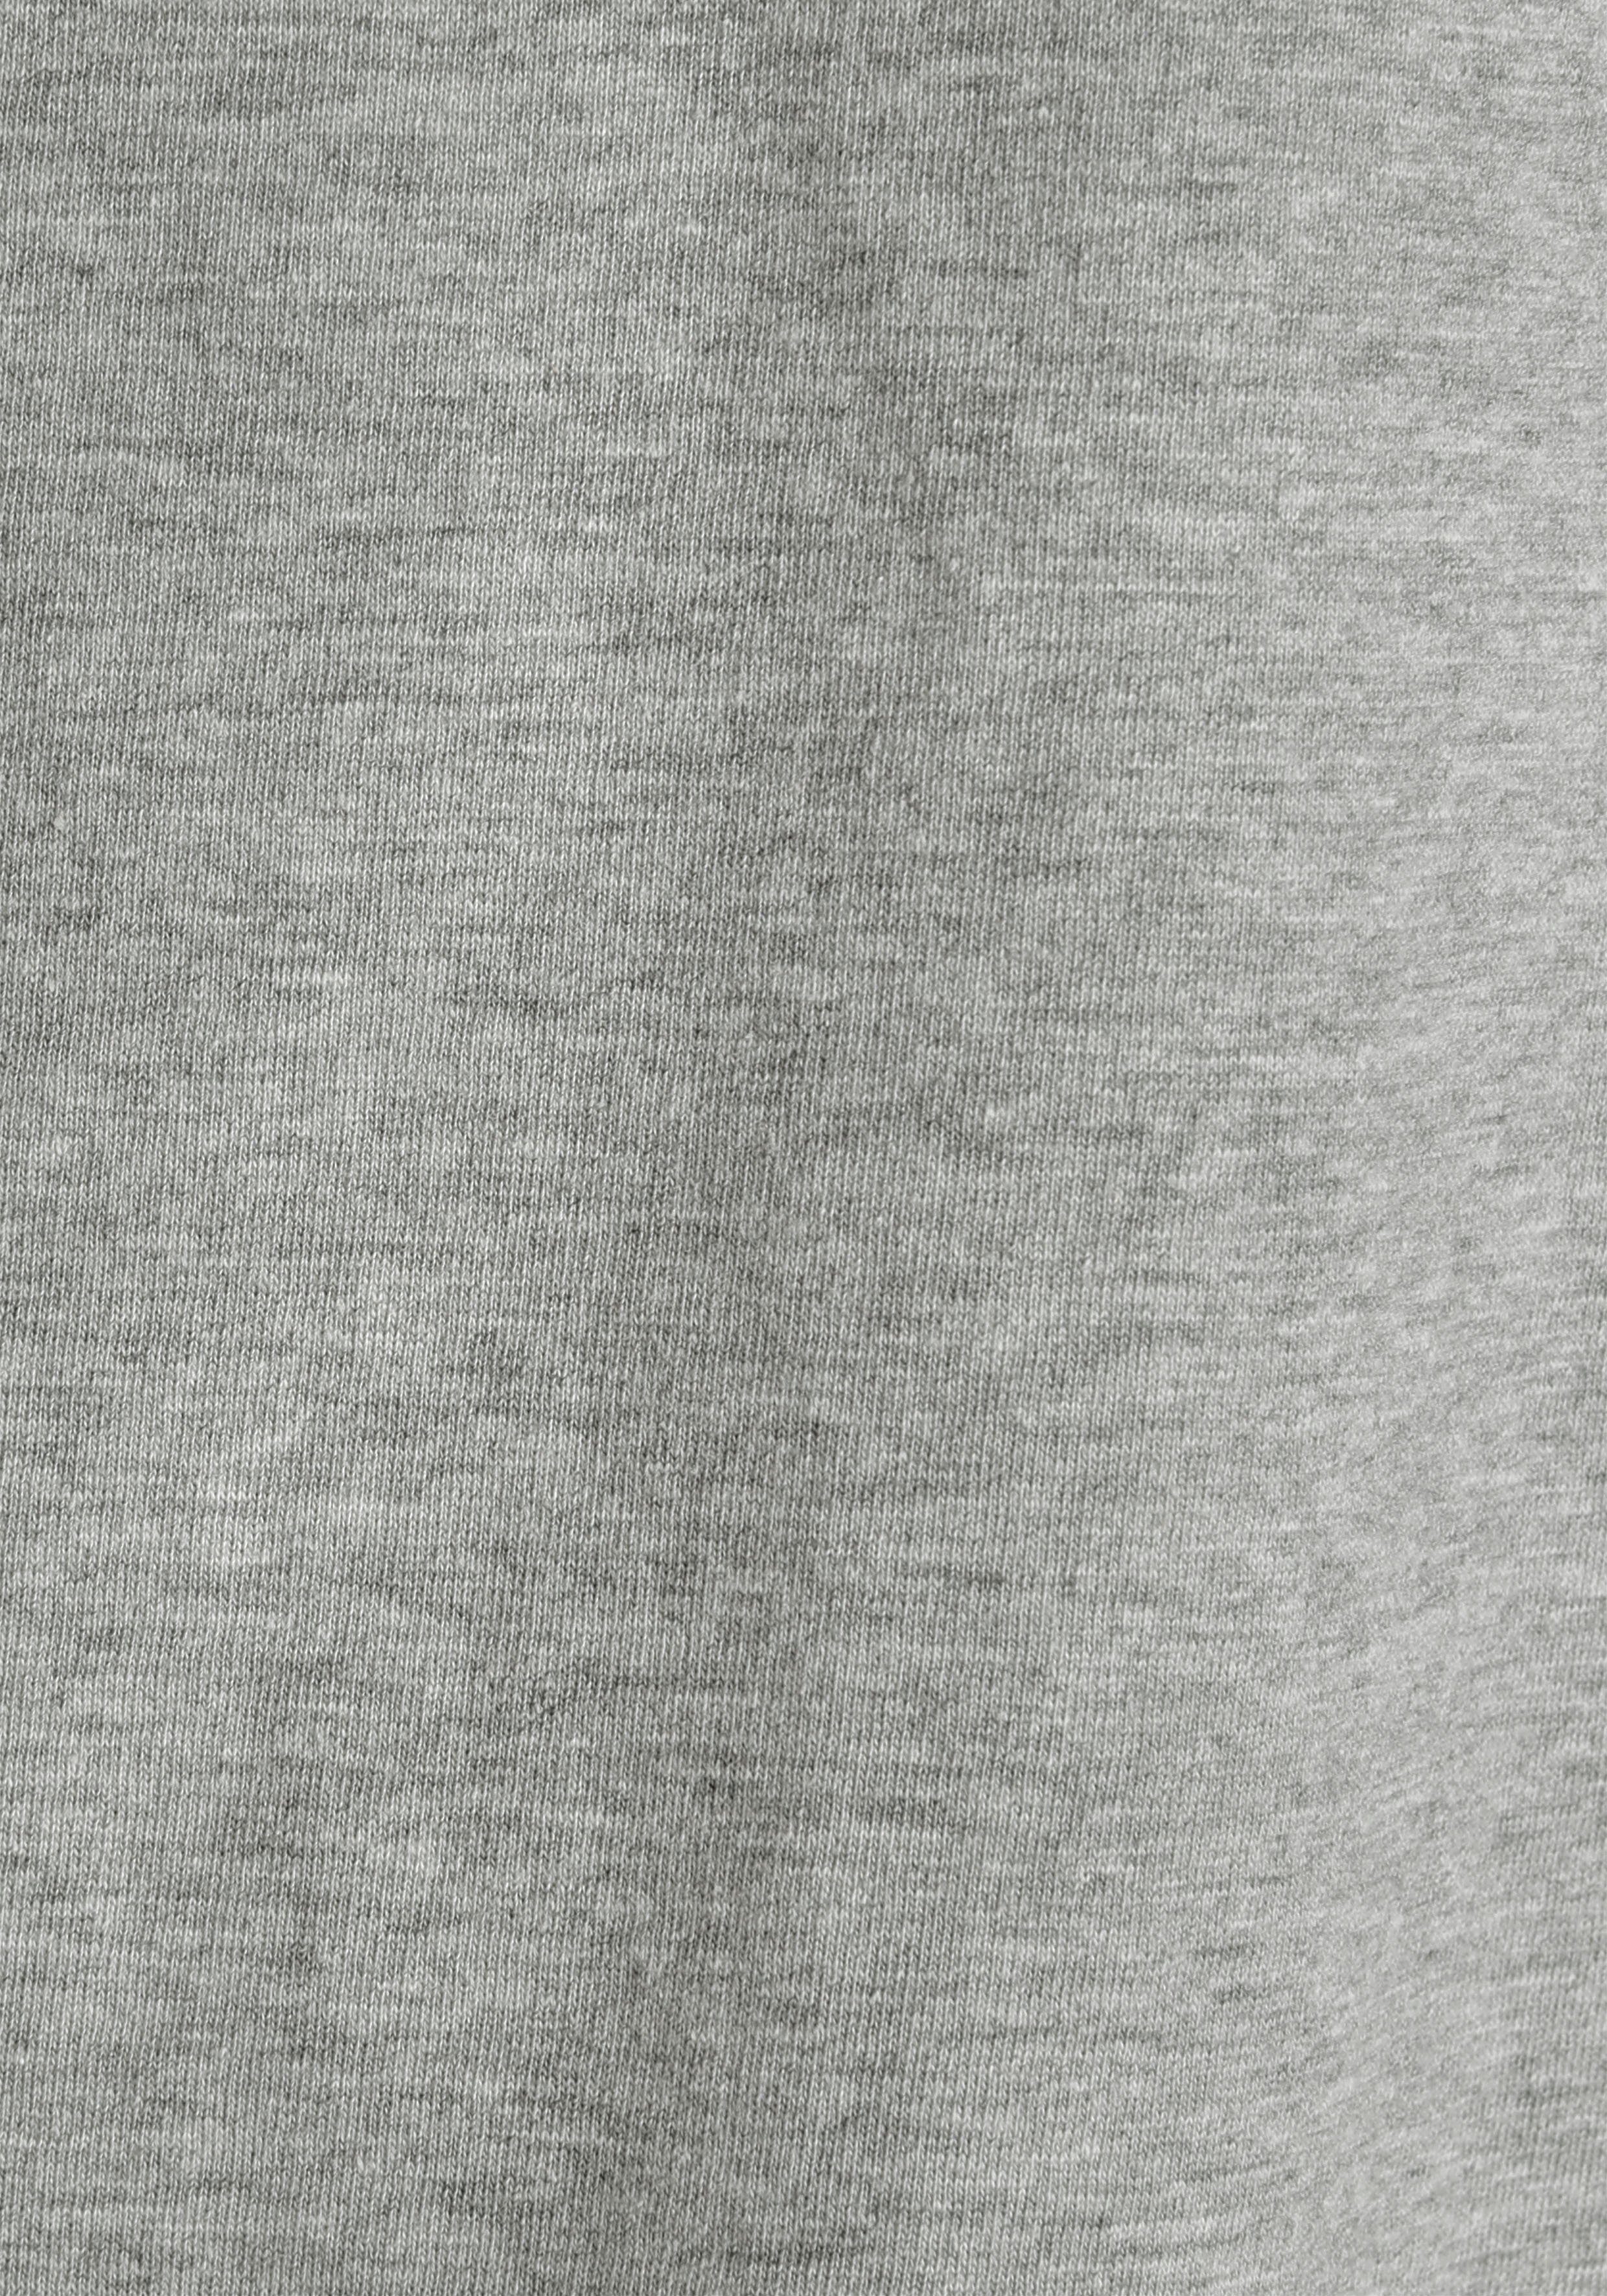 Man's perfekt World 3-tlg., 3er-Pack) als weiss-grau-mel.-schwarz (Packung, T-shirt T-Shirt Unterzieh-